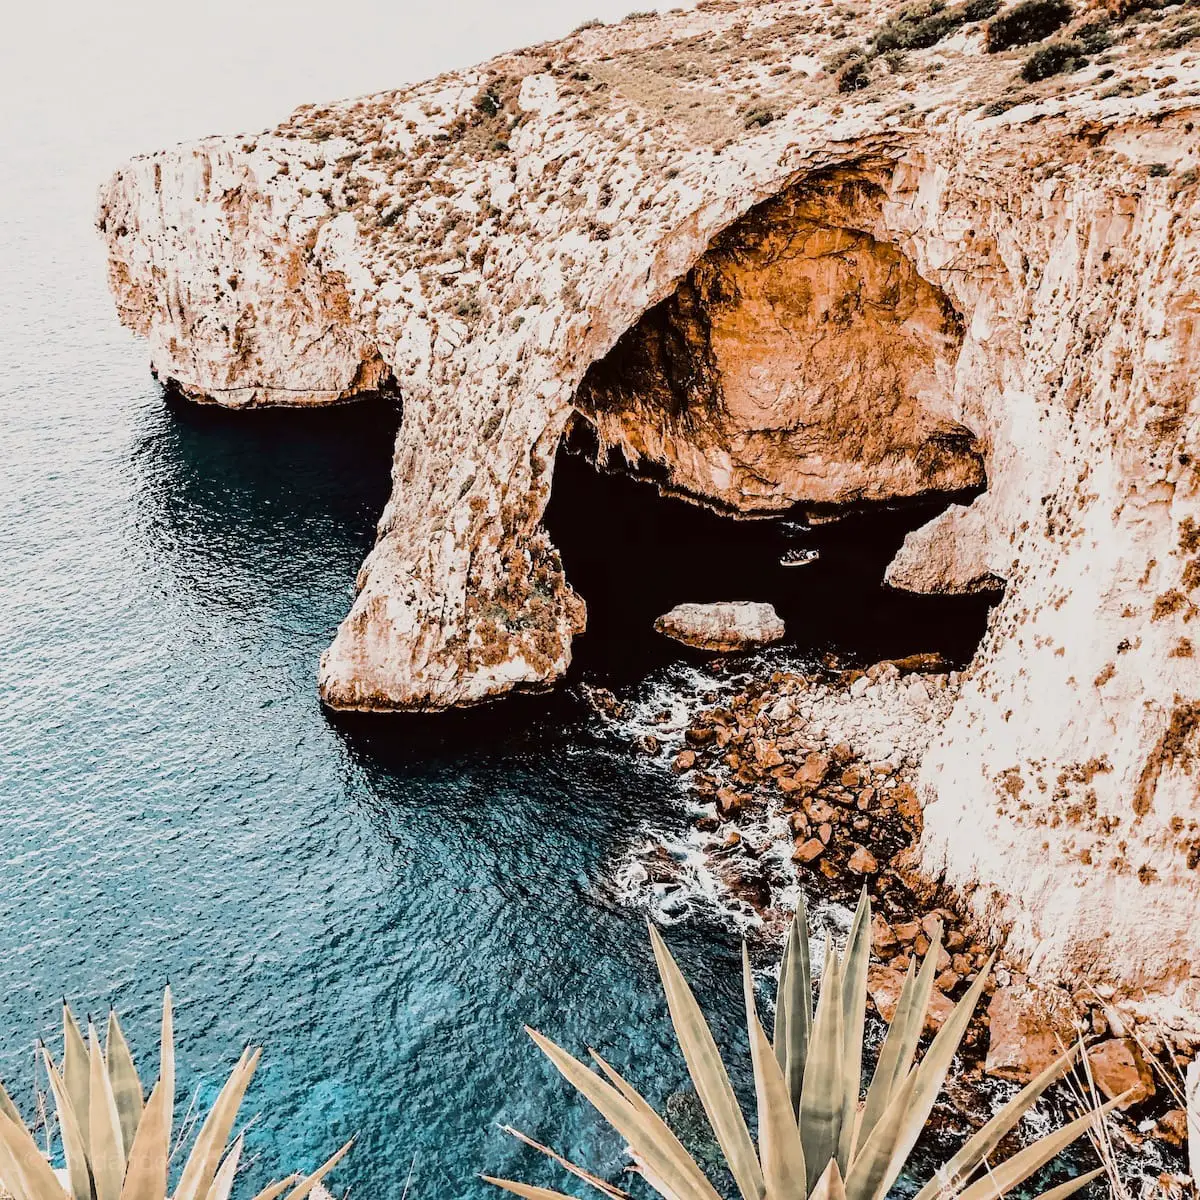 Blaue Grotte Malta, Anreise zur Blue Grotto, Malta Sehenswürdigkeiten 